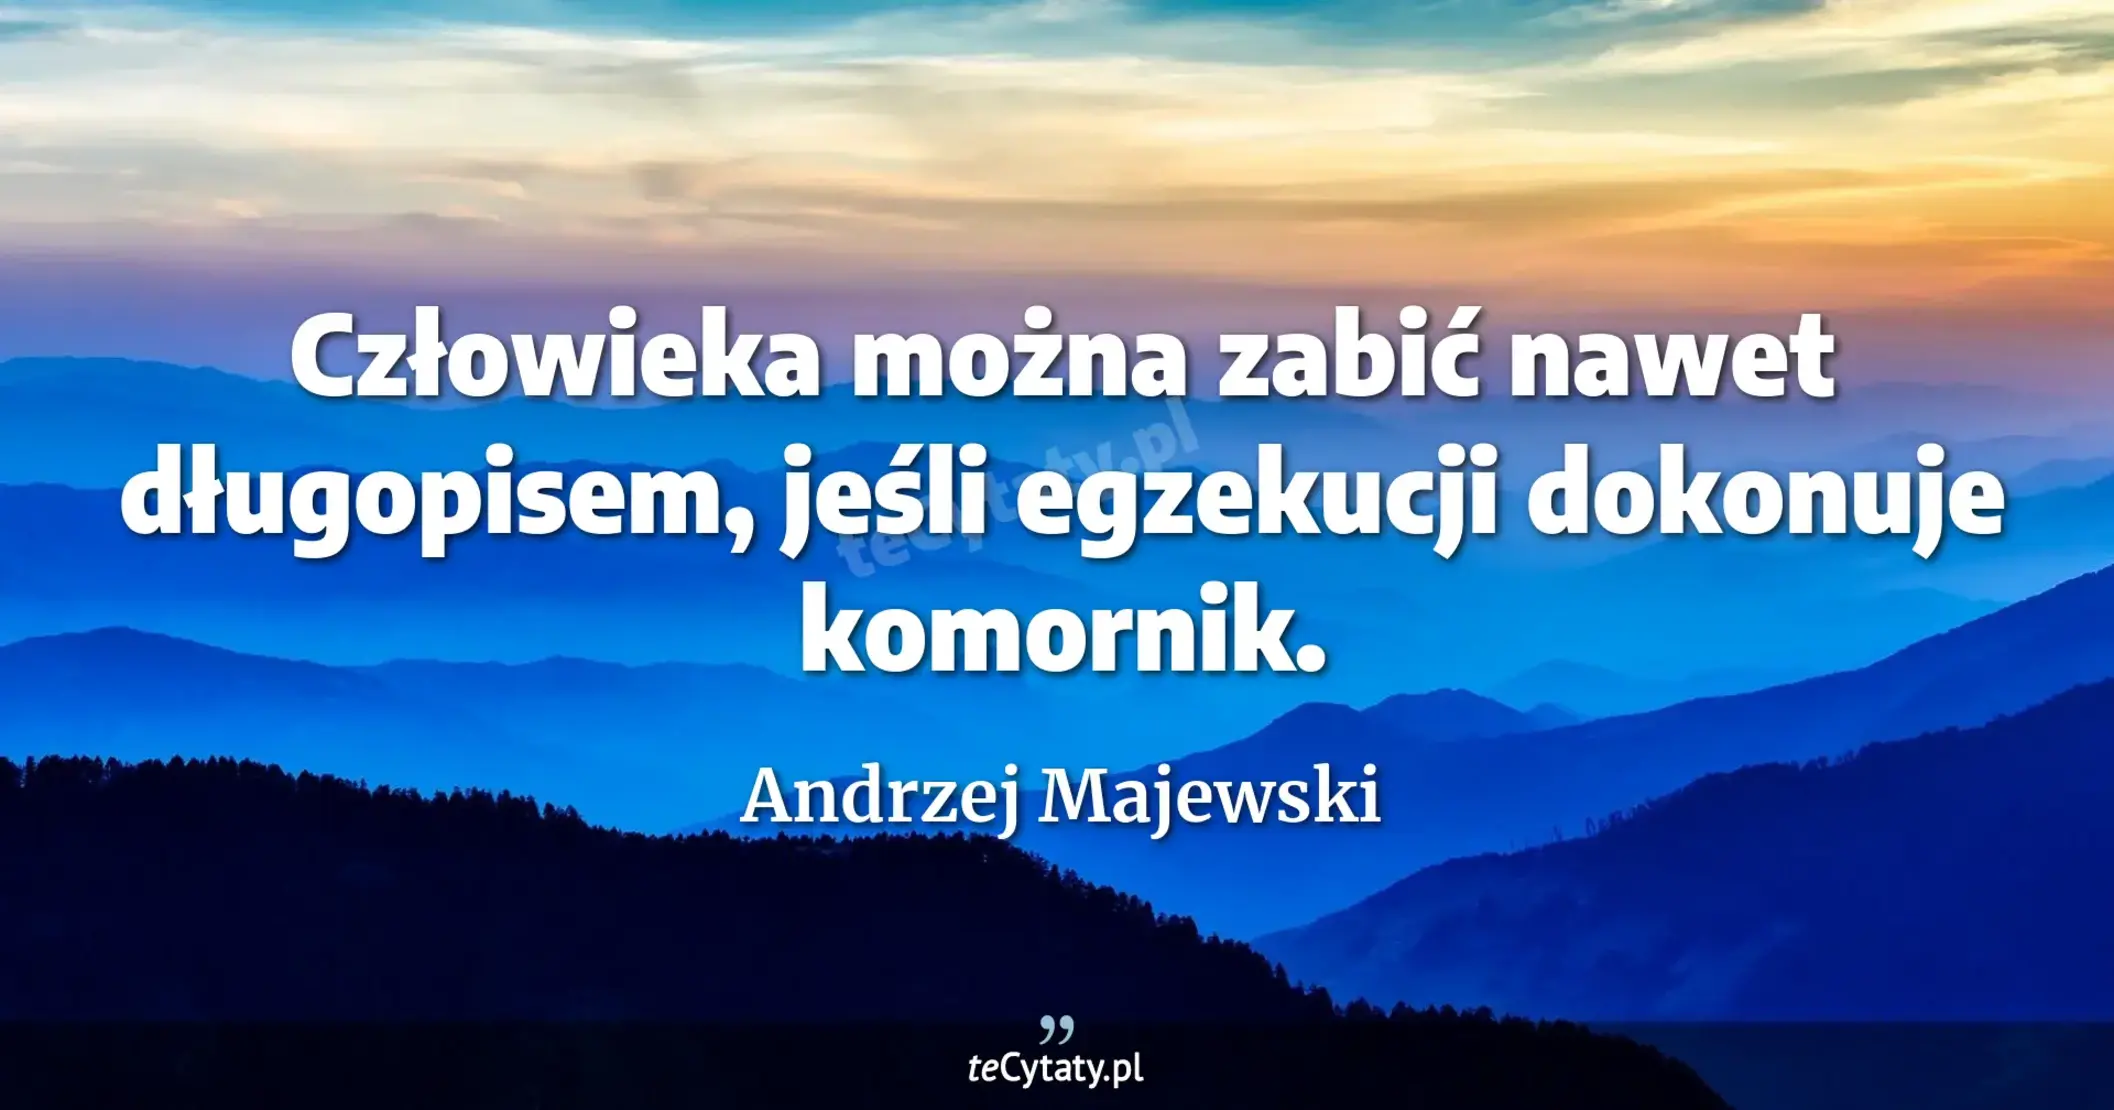 Człowieka można zabić nawet długopisem, jeśli egzekucji dokonuje komornik. - Andrzej Majewski